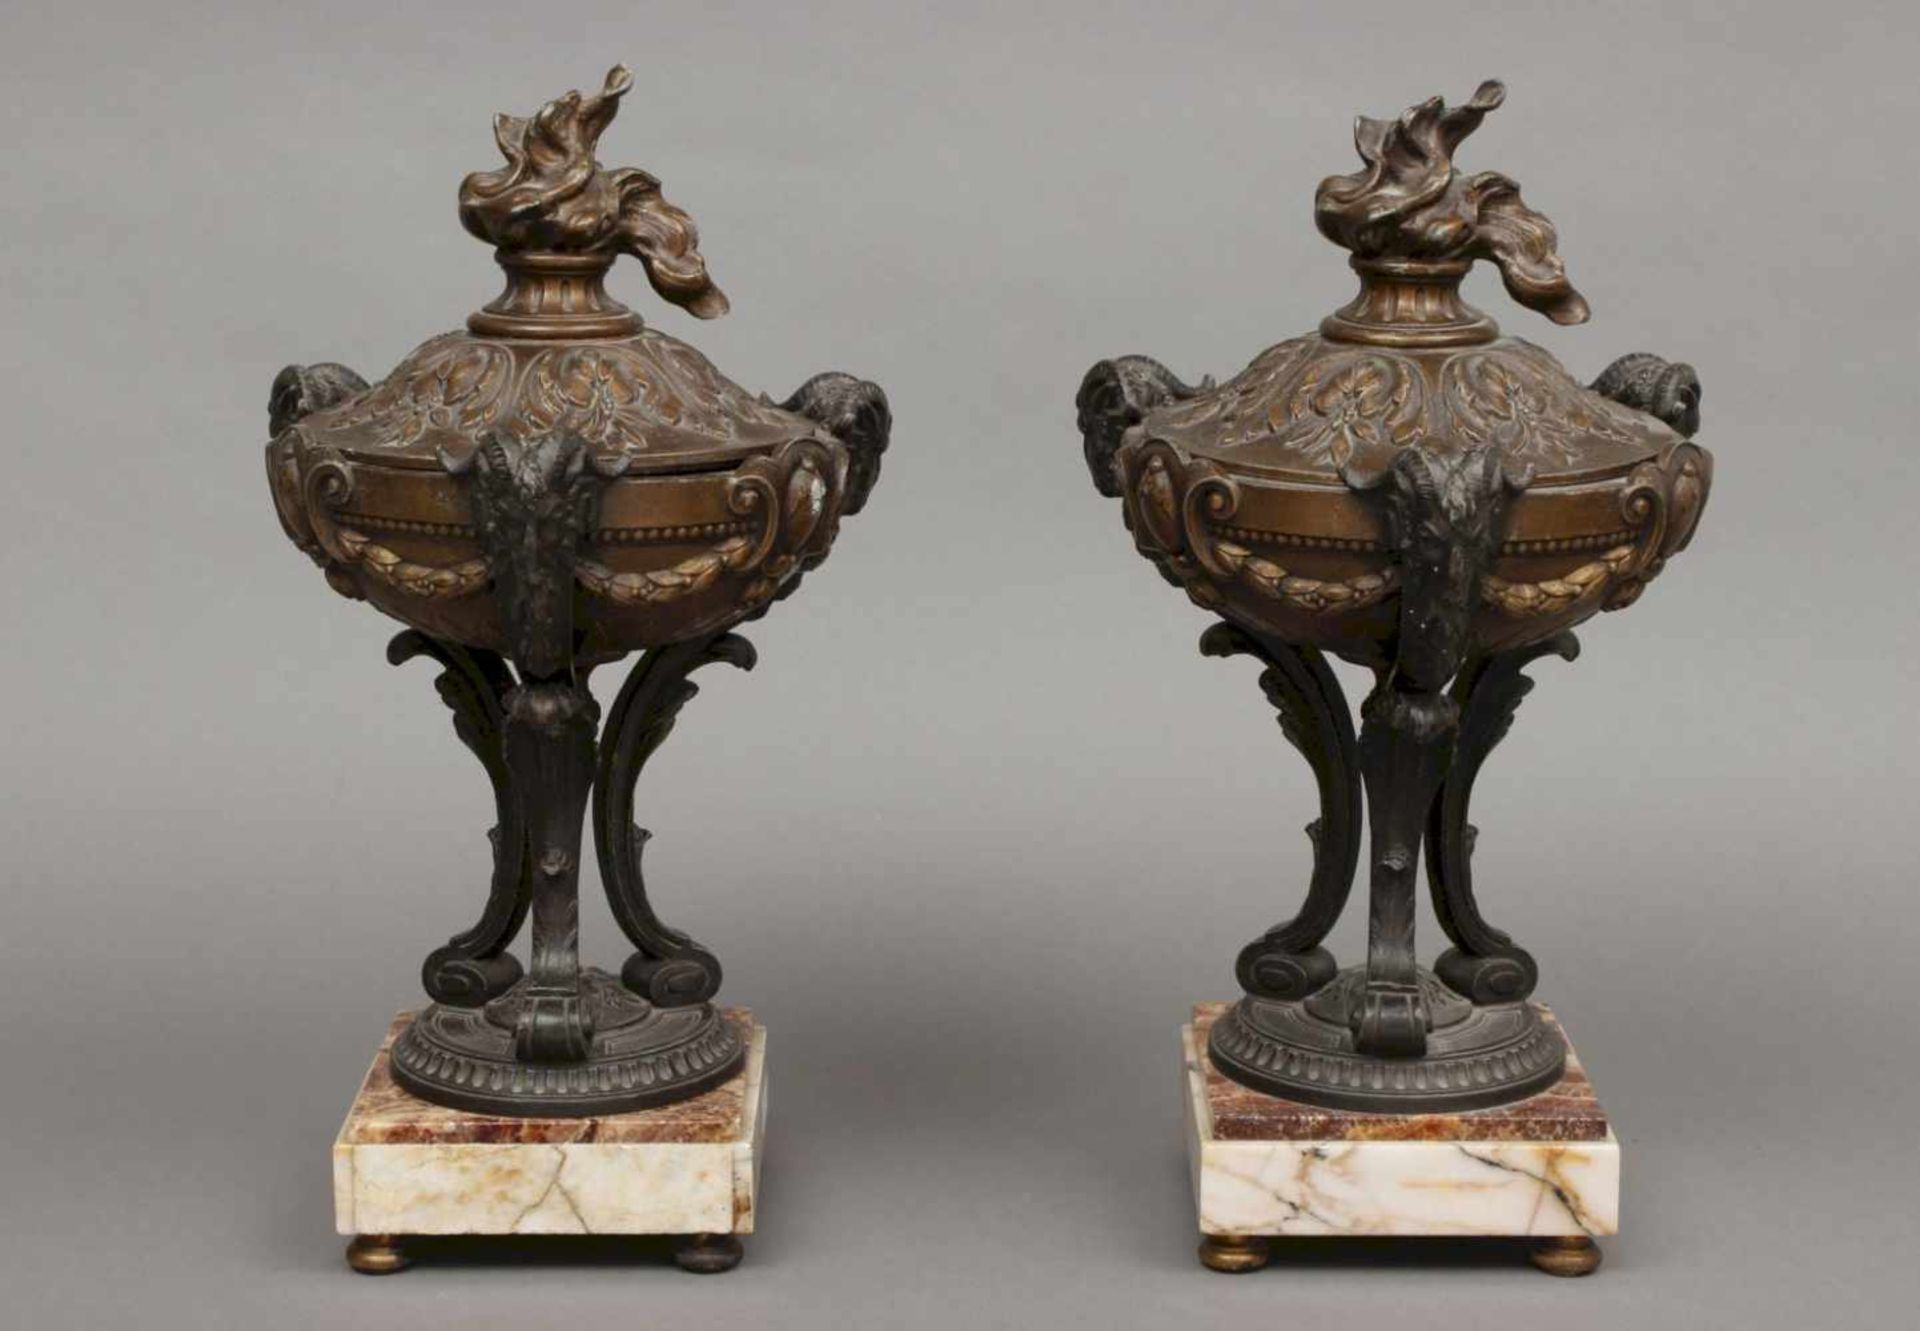 Paar Beisteller/Urnen, Frankreich, um 1880 (Napoleon III.)Zinkguss, bronzefarben patiniert, im Stile